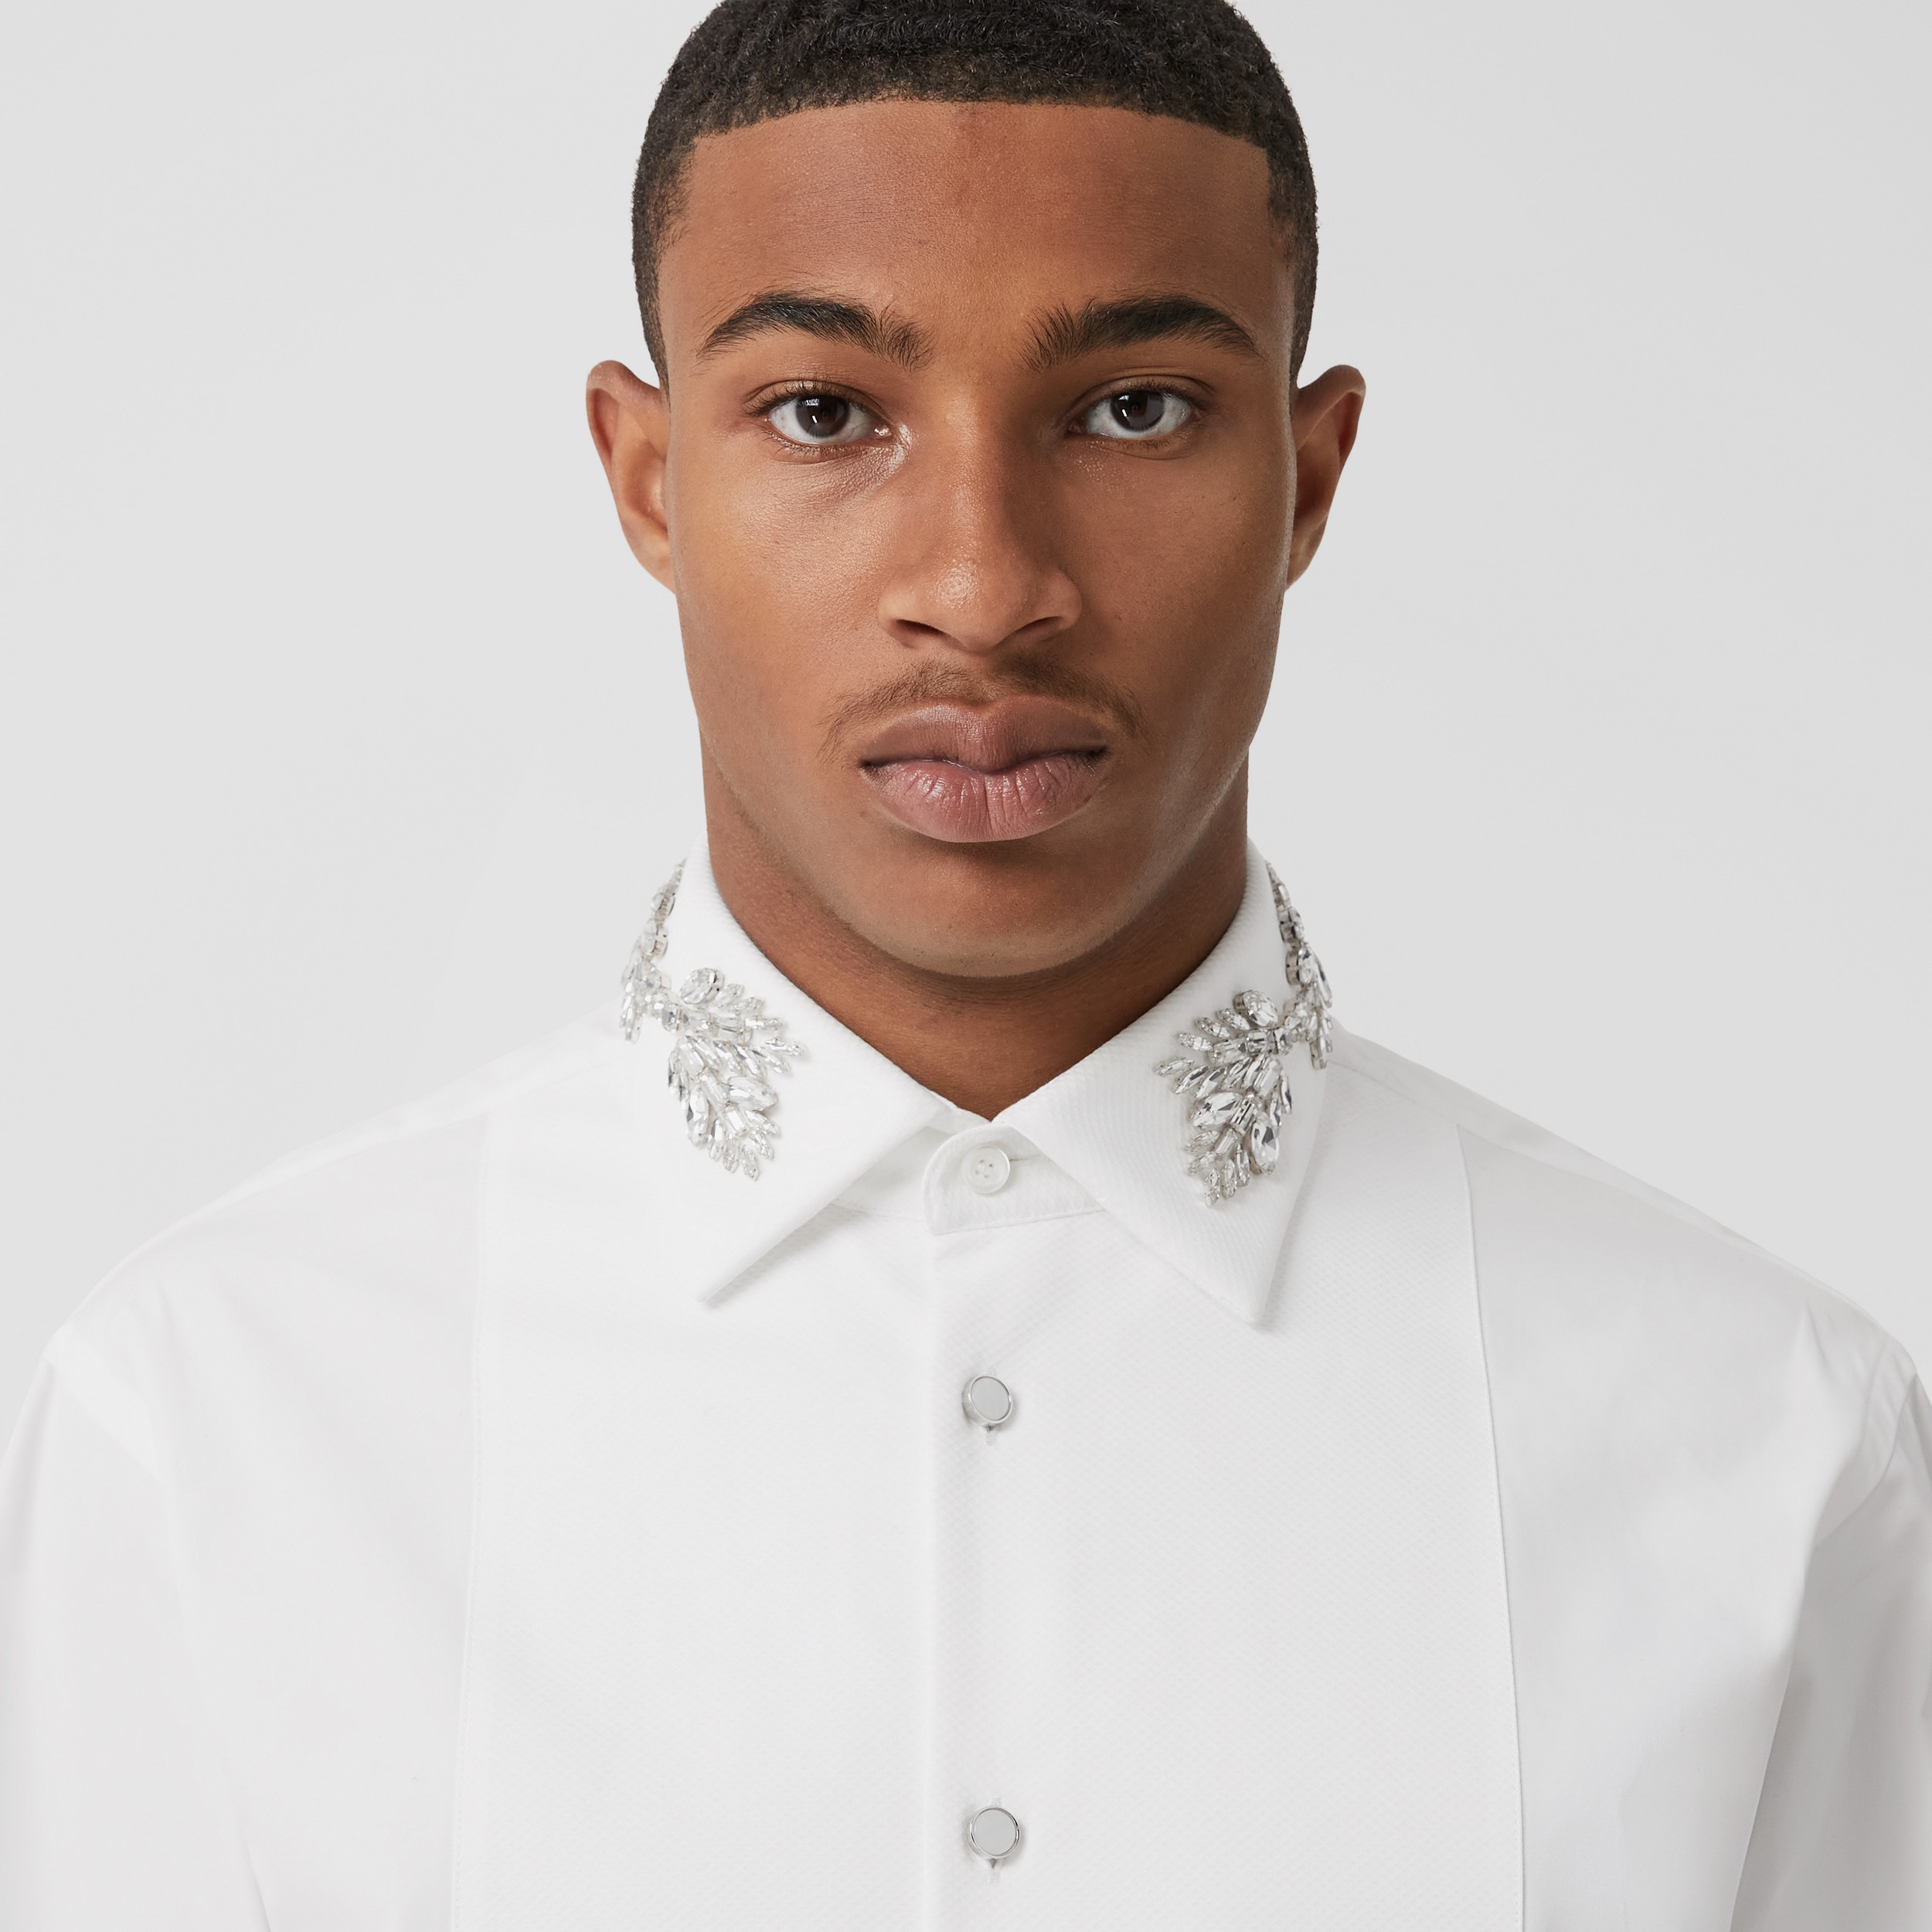 Sada secundario Sinceramente Camisa entallada en algodón con emblema Equestrian Knight de cristales ( Blanco) - Hombre | Burberry® oficial